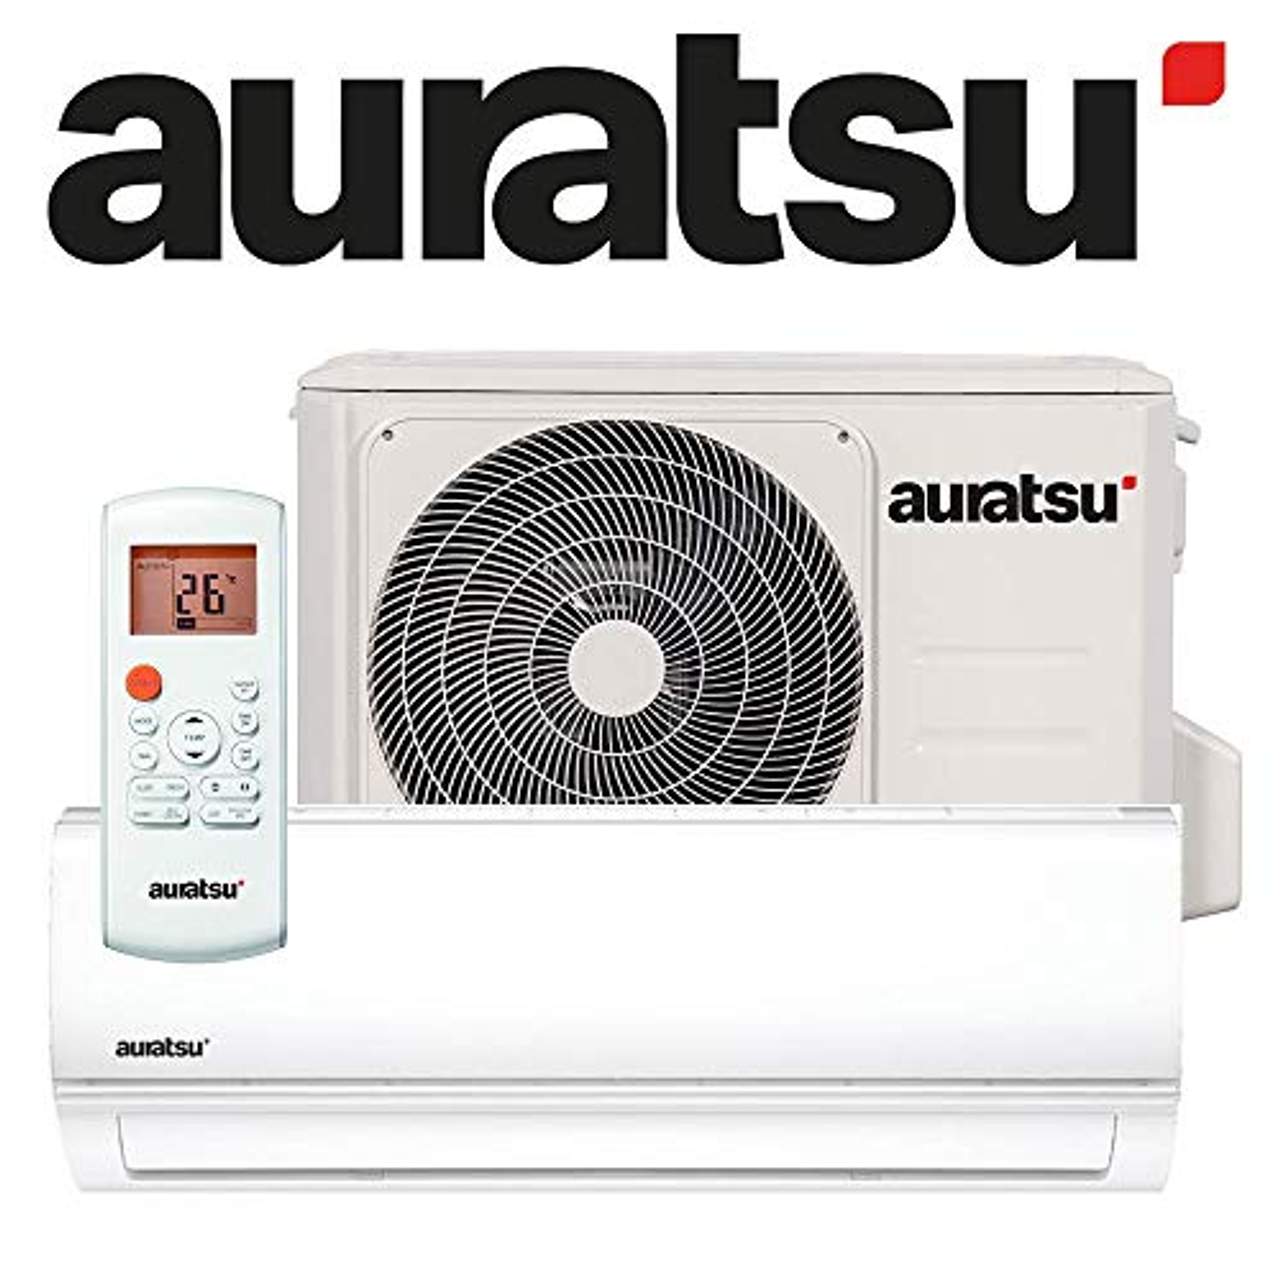 Auratsu AWX-09KTA Split Klimaanlage 2,6 kW 9000 BTU